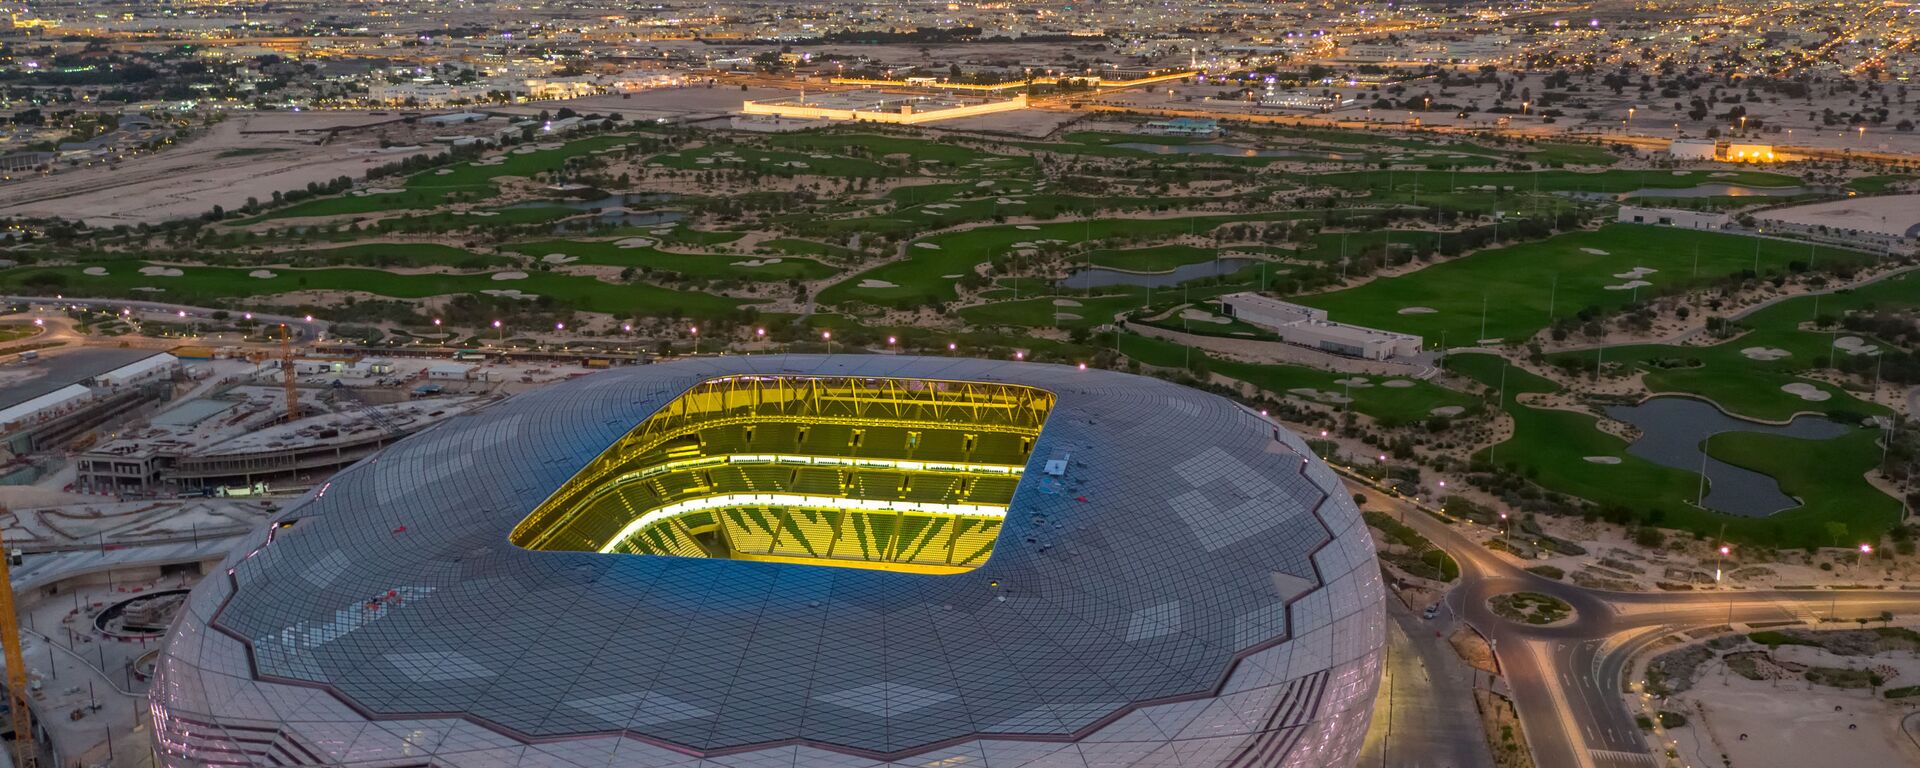 ملعب المدينة التعليمية، ضمن ملاعب كأس العالم في قطر 2022 بسعة 40 ألف متفرج - سبوتنيك عربي, 1920, 06.09.2021